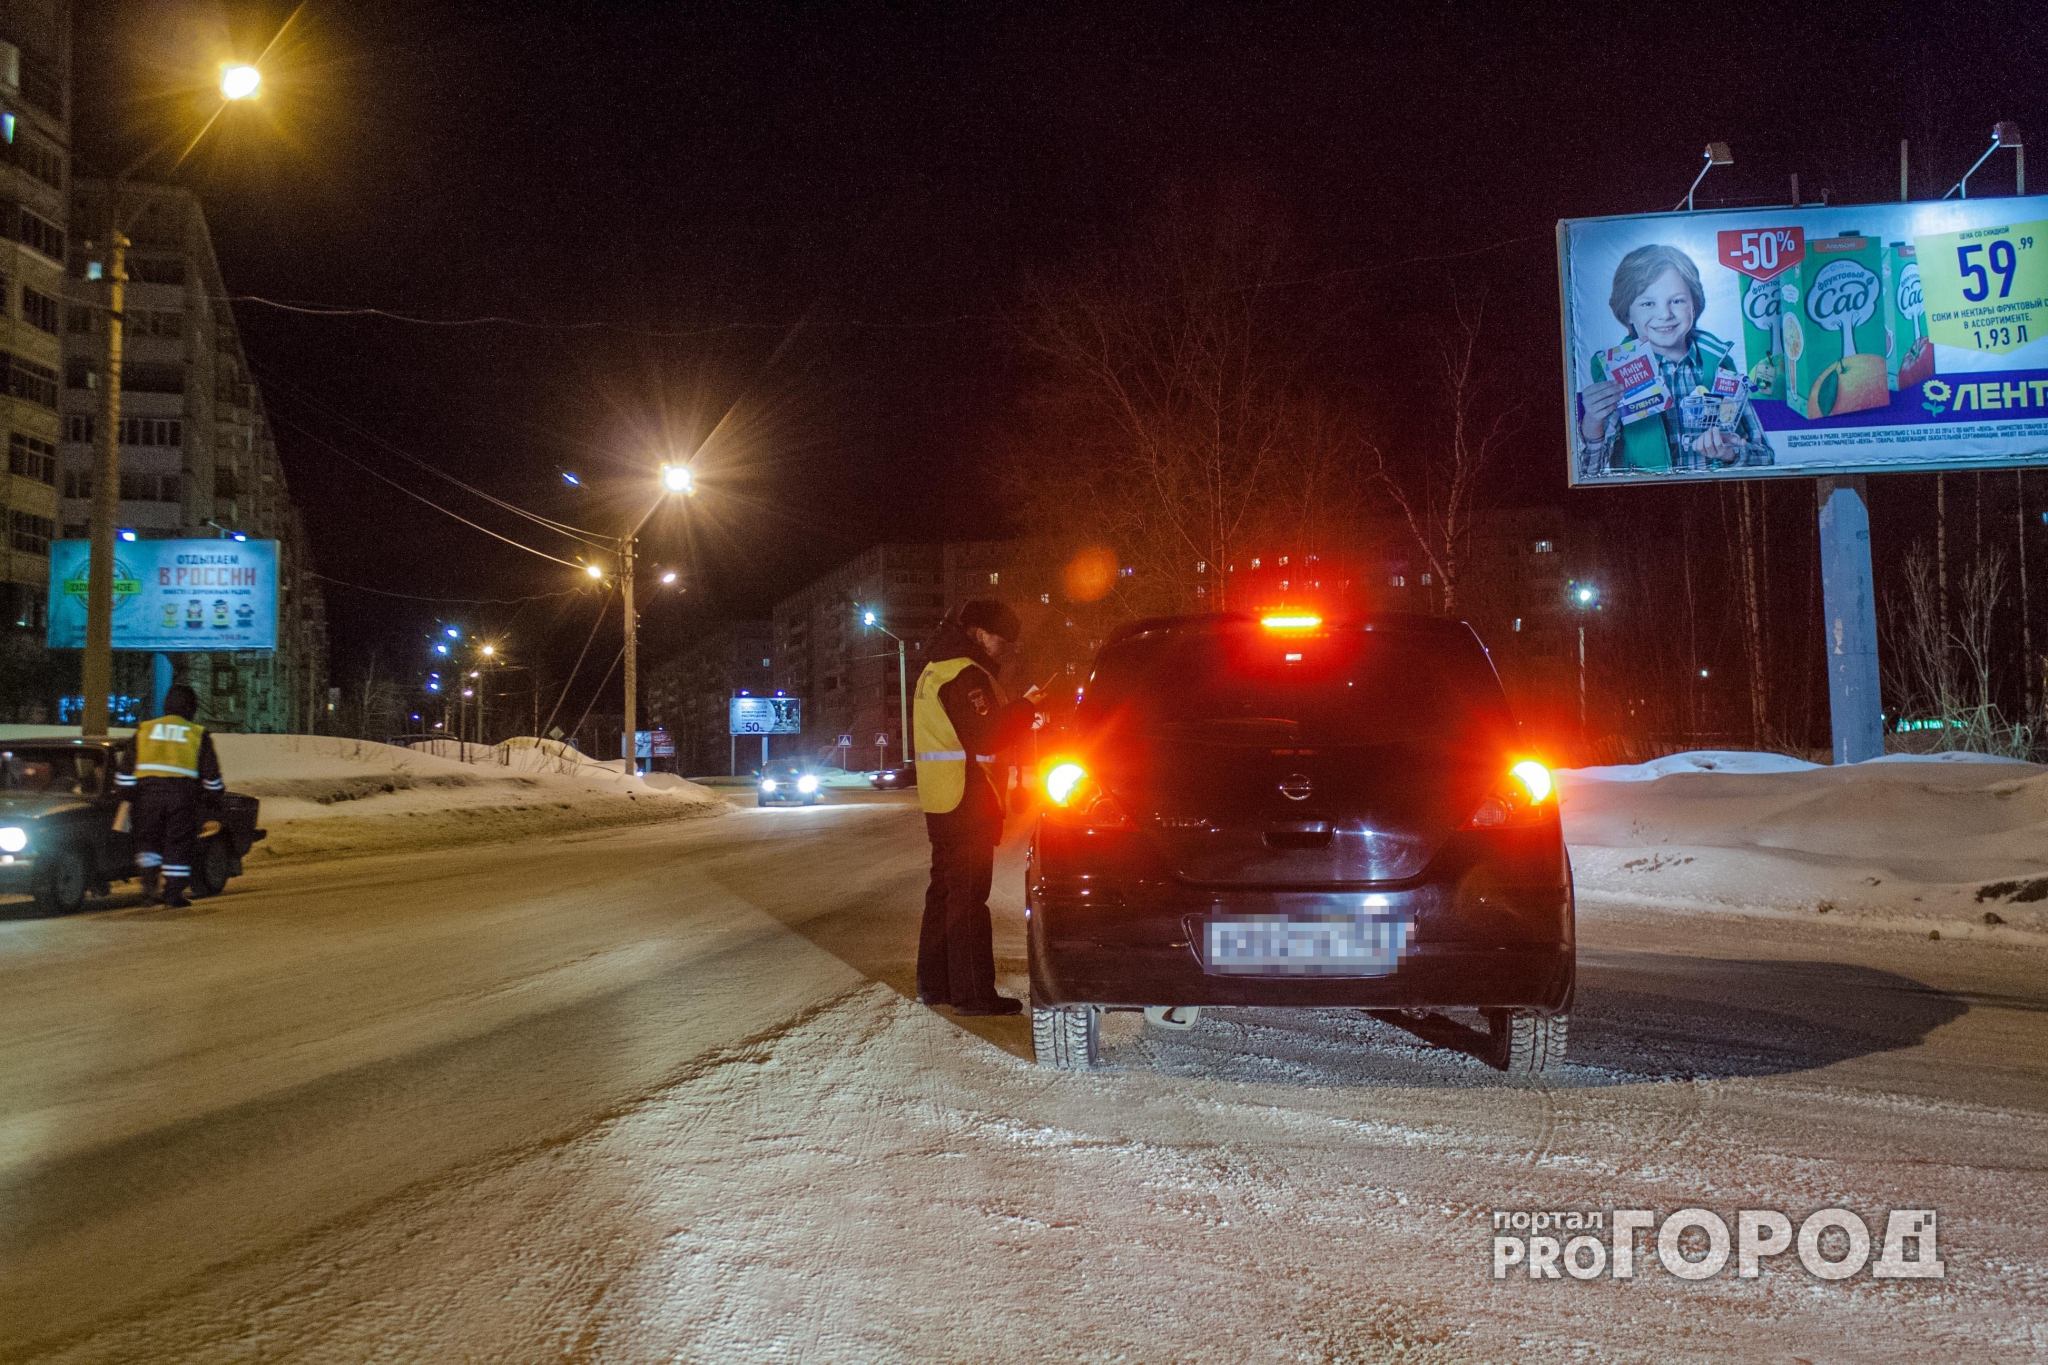 В Кирове задержали пьяного иностранца за рулем: полночи искали переводчика